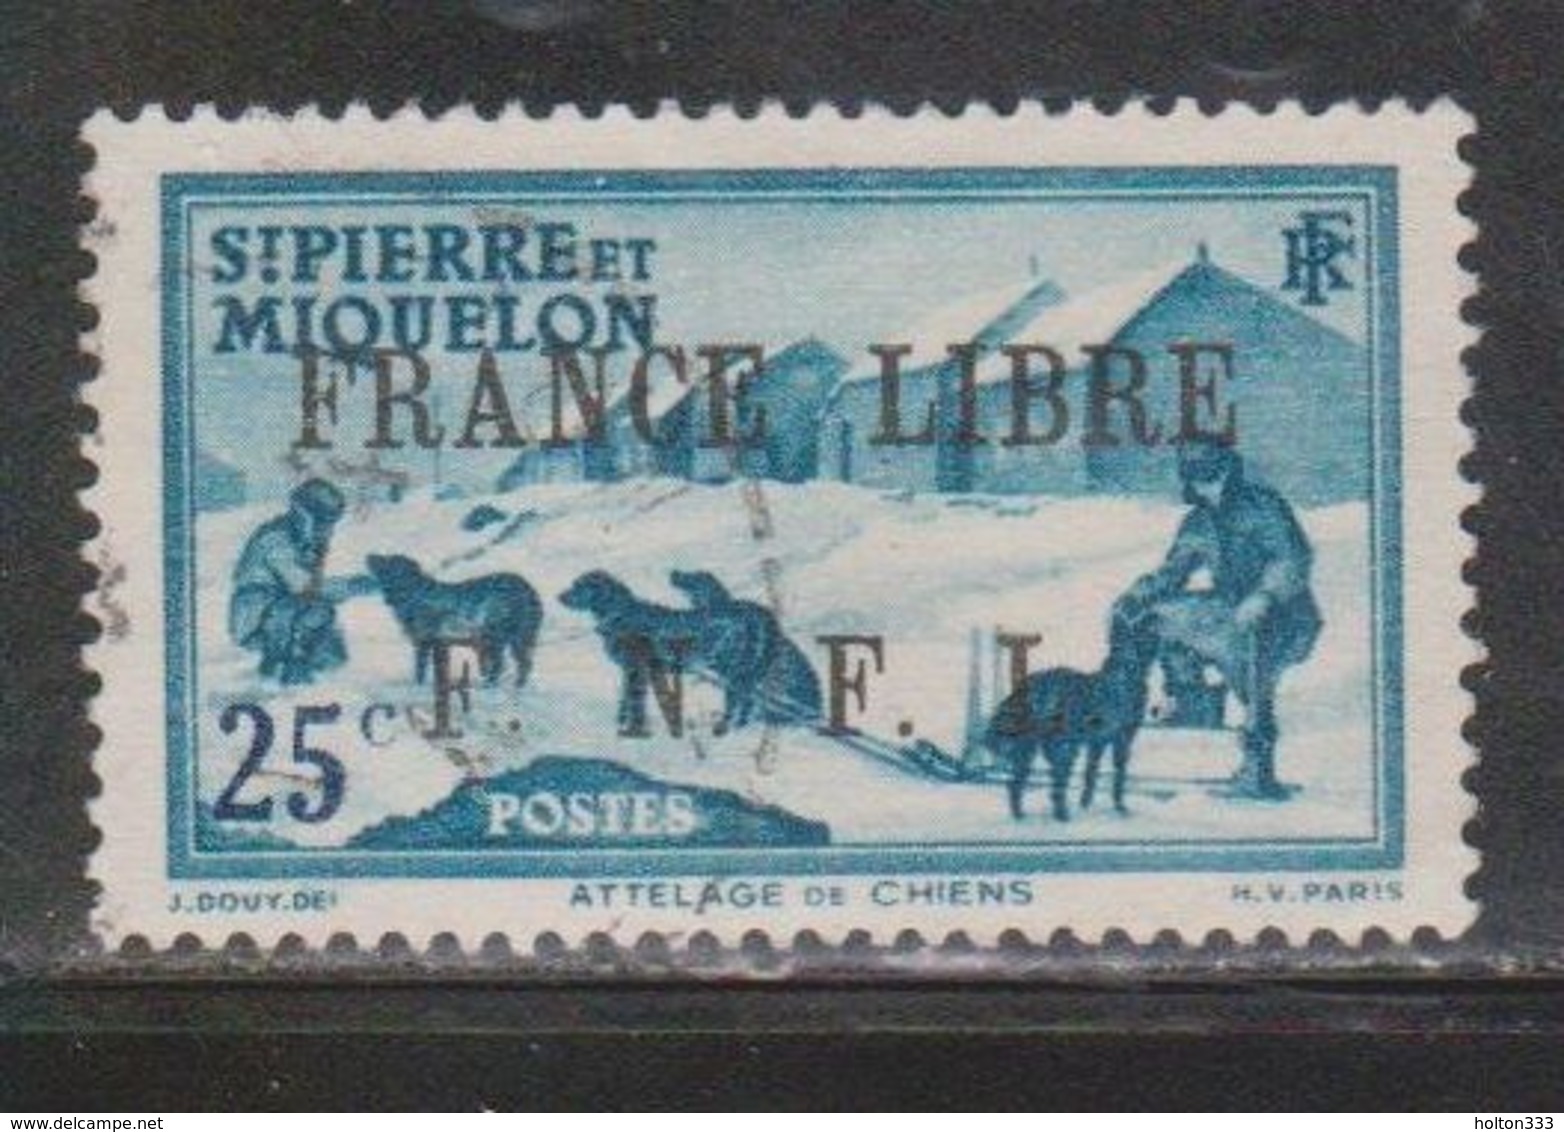 ST PIERRE & MIQUELON Scott # 229 Used 2 - Dog Team With France Libre FNFL Overprint - Oblitérés